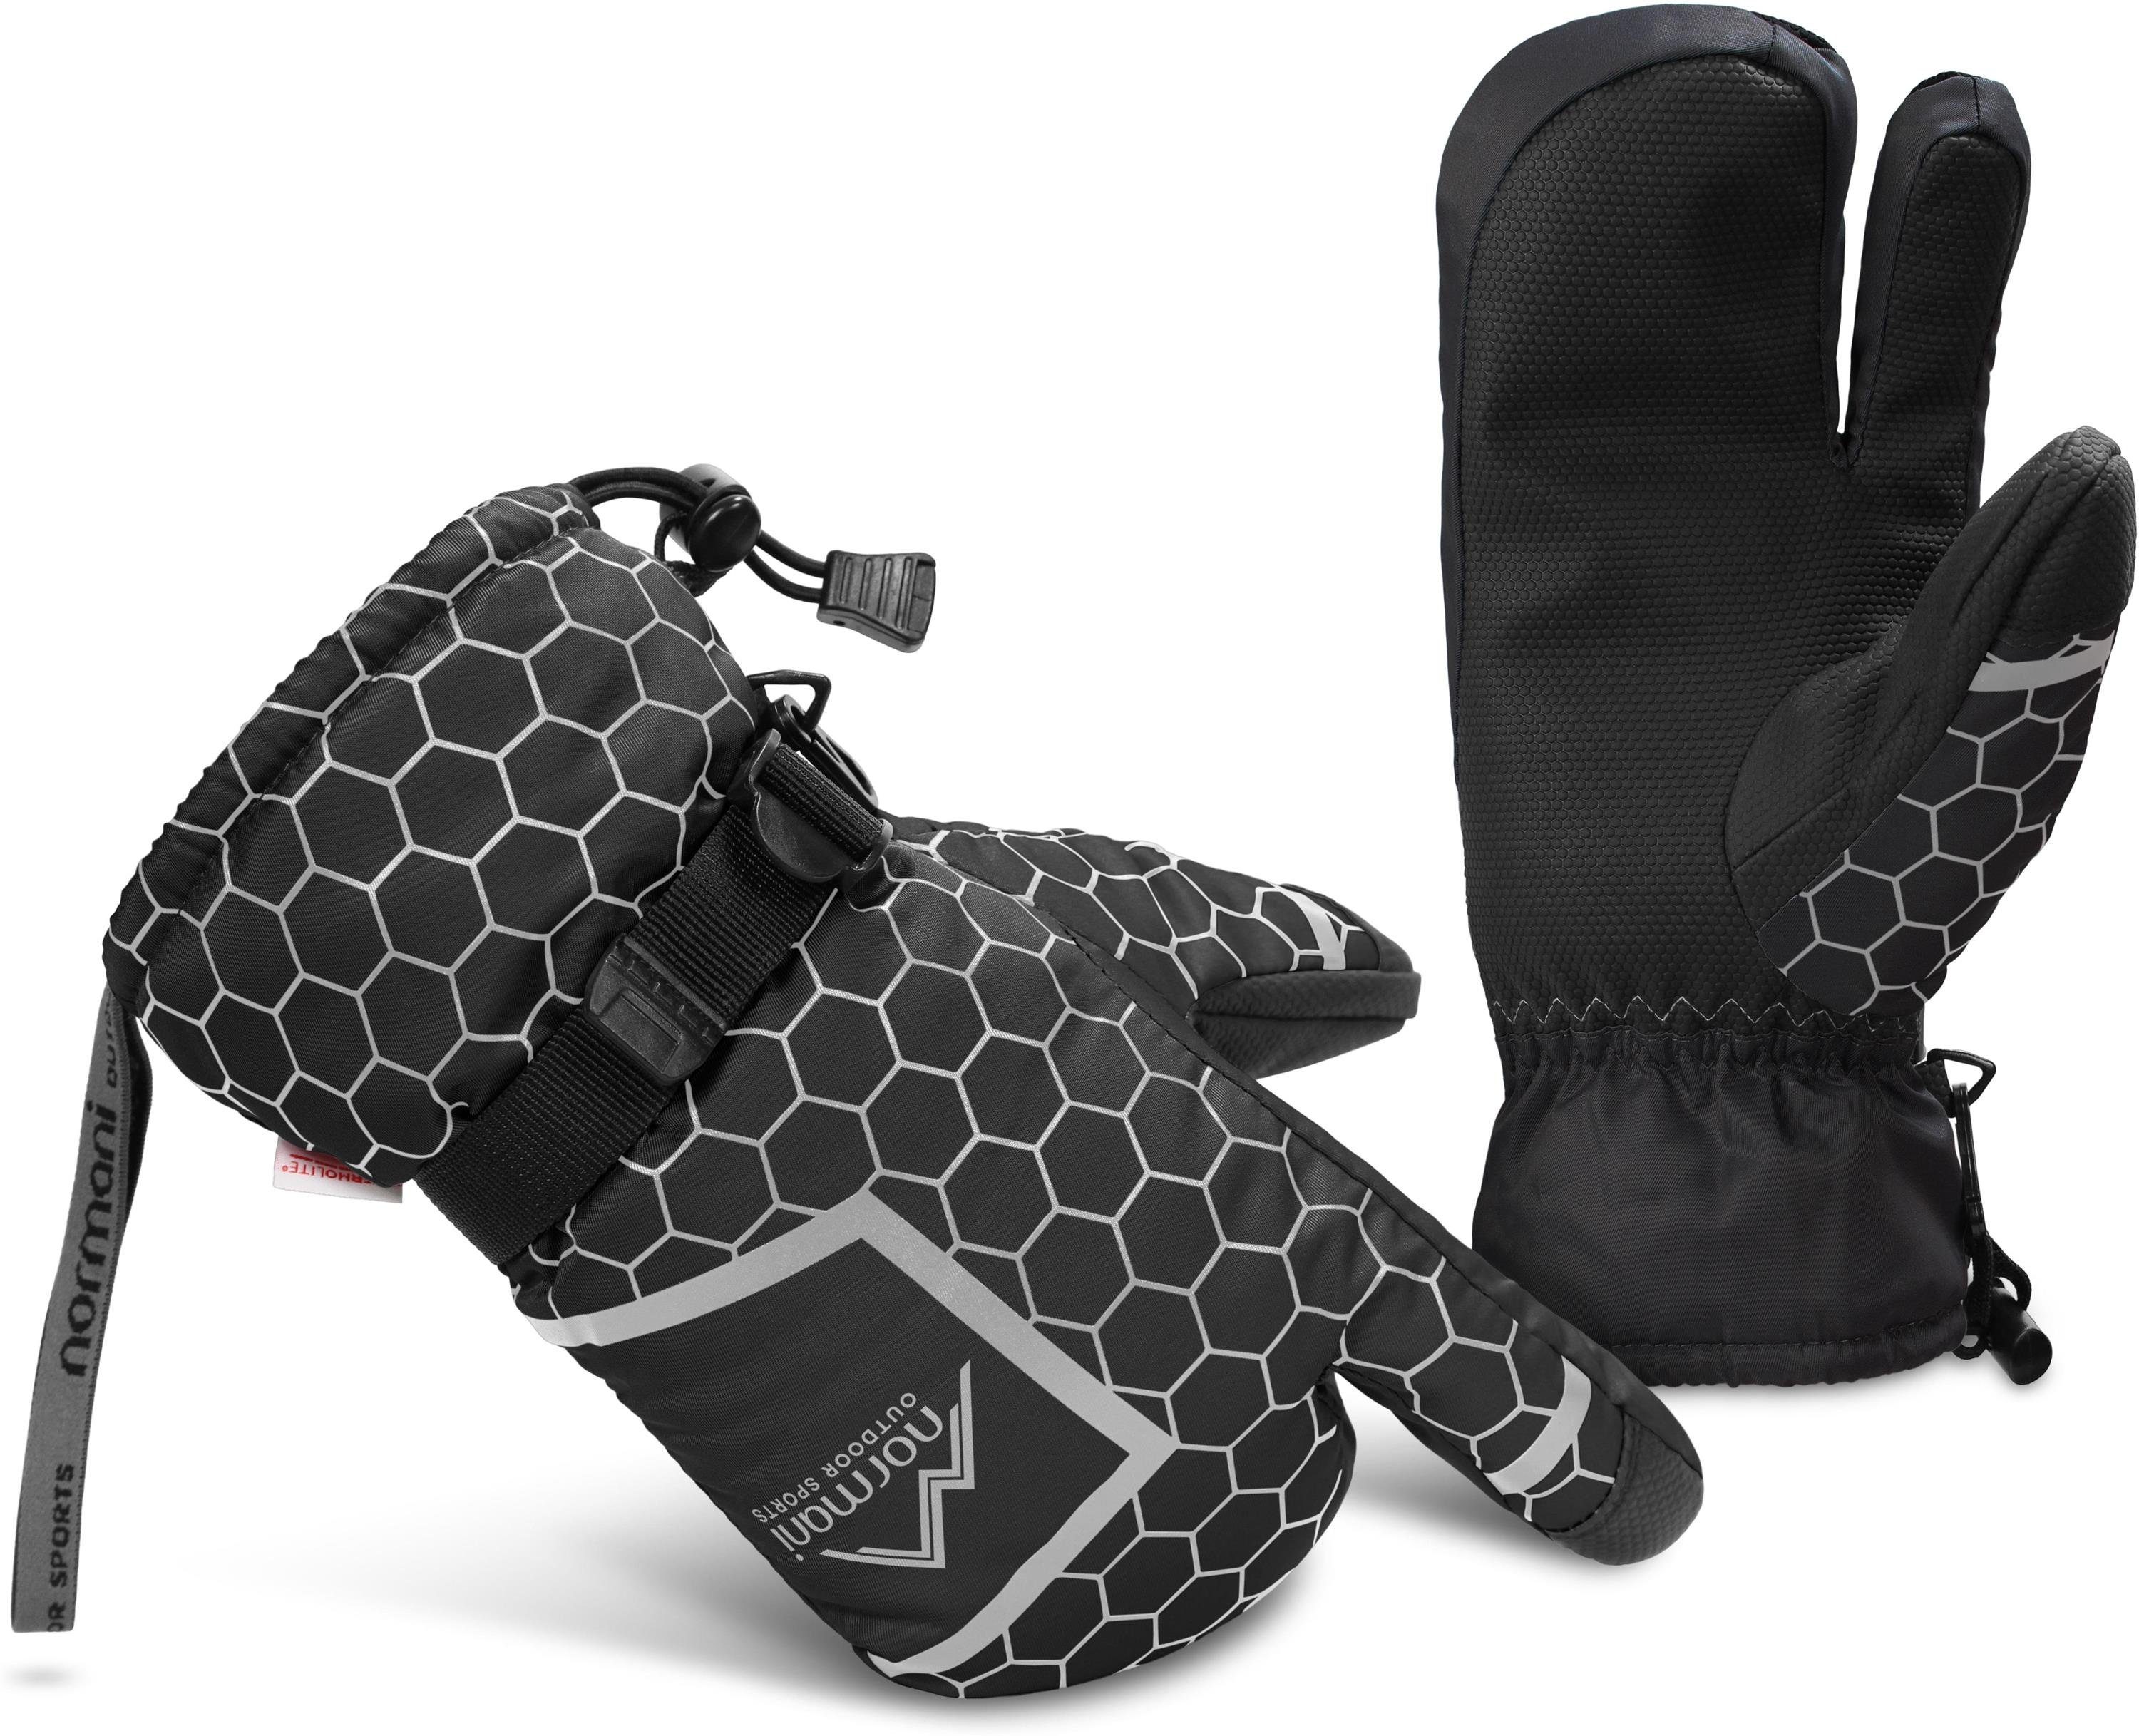 Apex normani Füllung - Winterhandschuhe mit Skihandschuhe - ComforMax - Thermo Skihandschuhe Atmungsaktiv Winterhandschuhe Winddicht - Wasserdicht